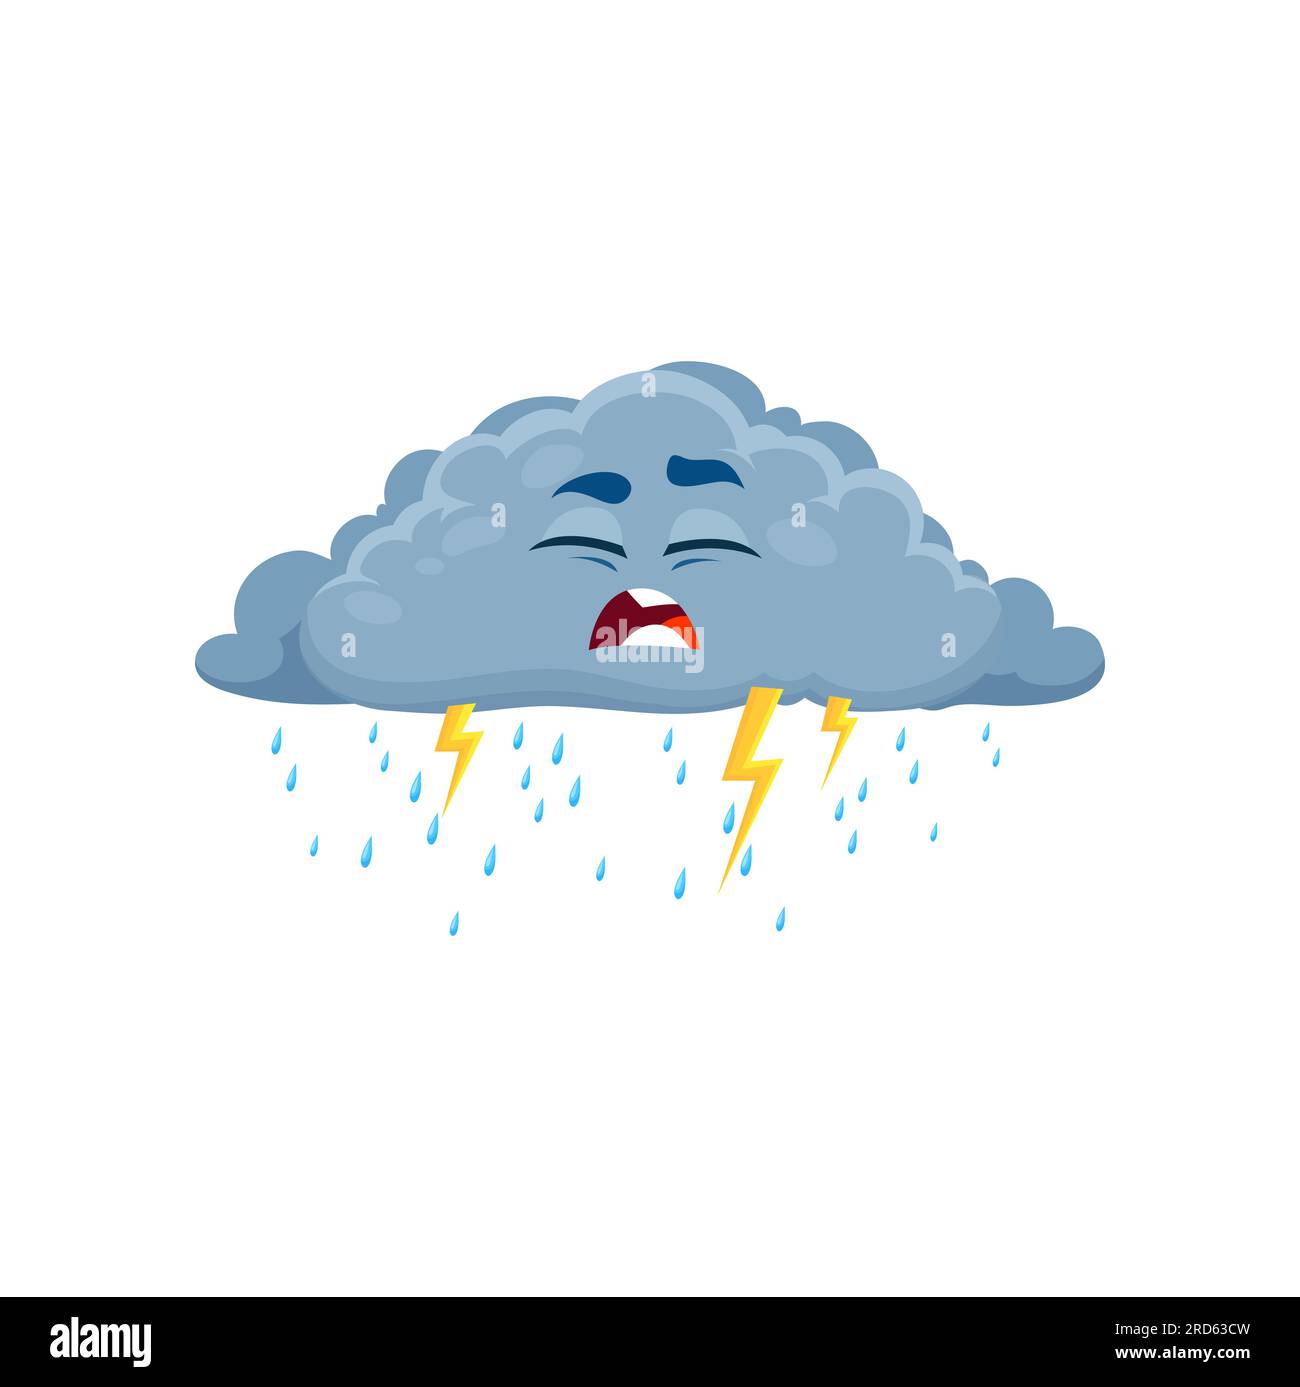 Dessin animé malheureux personnage de temps de nuage de foudre. Vecteur isolé nuage gris moelleux pluvieux avec des gouttelettes de pluie tombant du fond et des éclairs de tonnerre. Personnage couvert avec une expression de visage triste Illustration de Vecteur